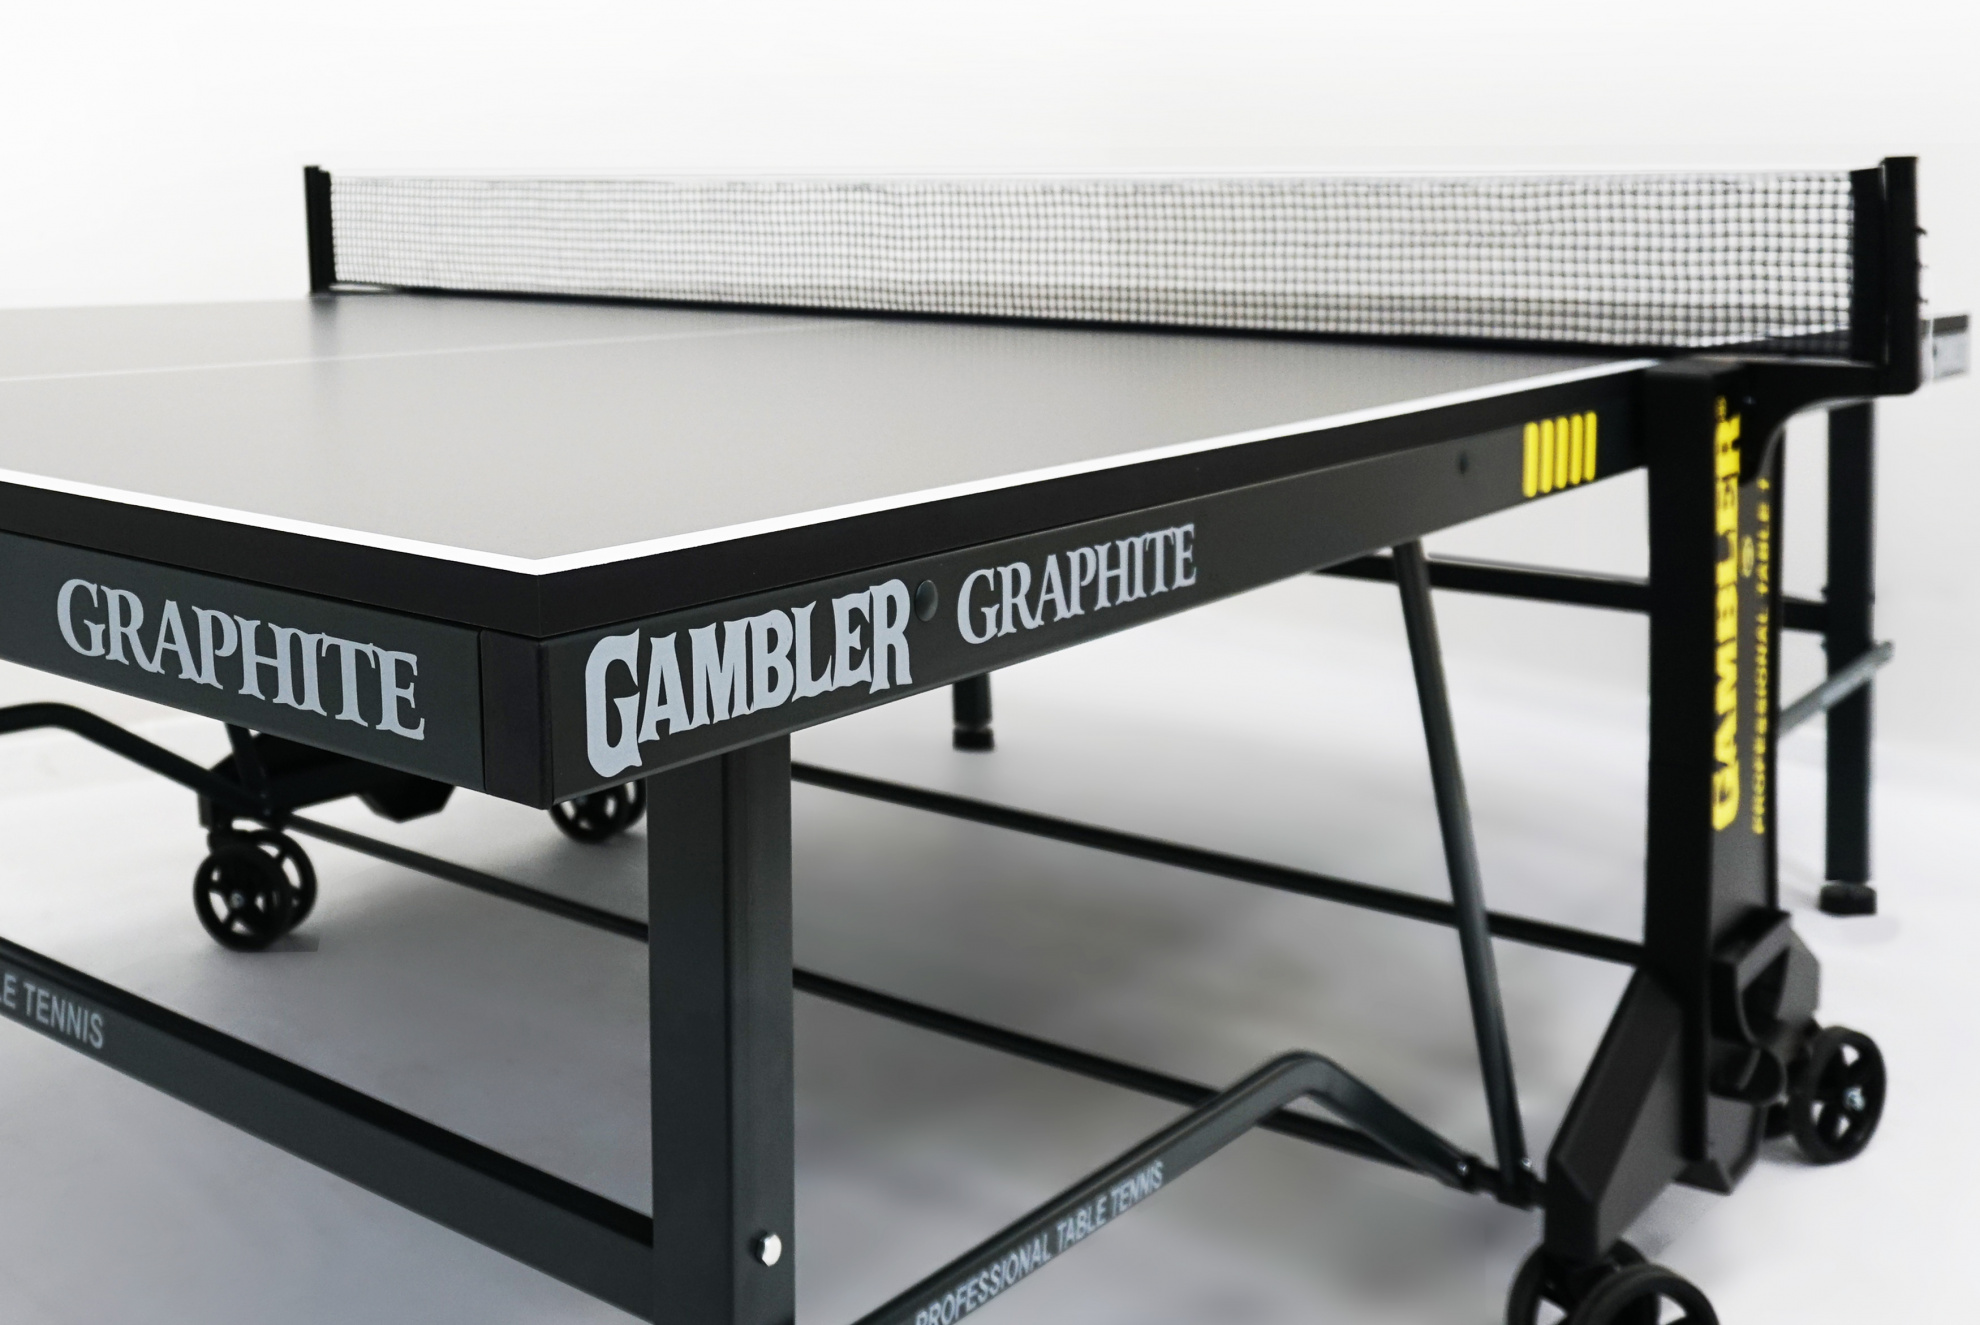 Теннисный стол для помещений Gambler Graphite